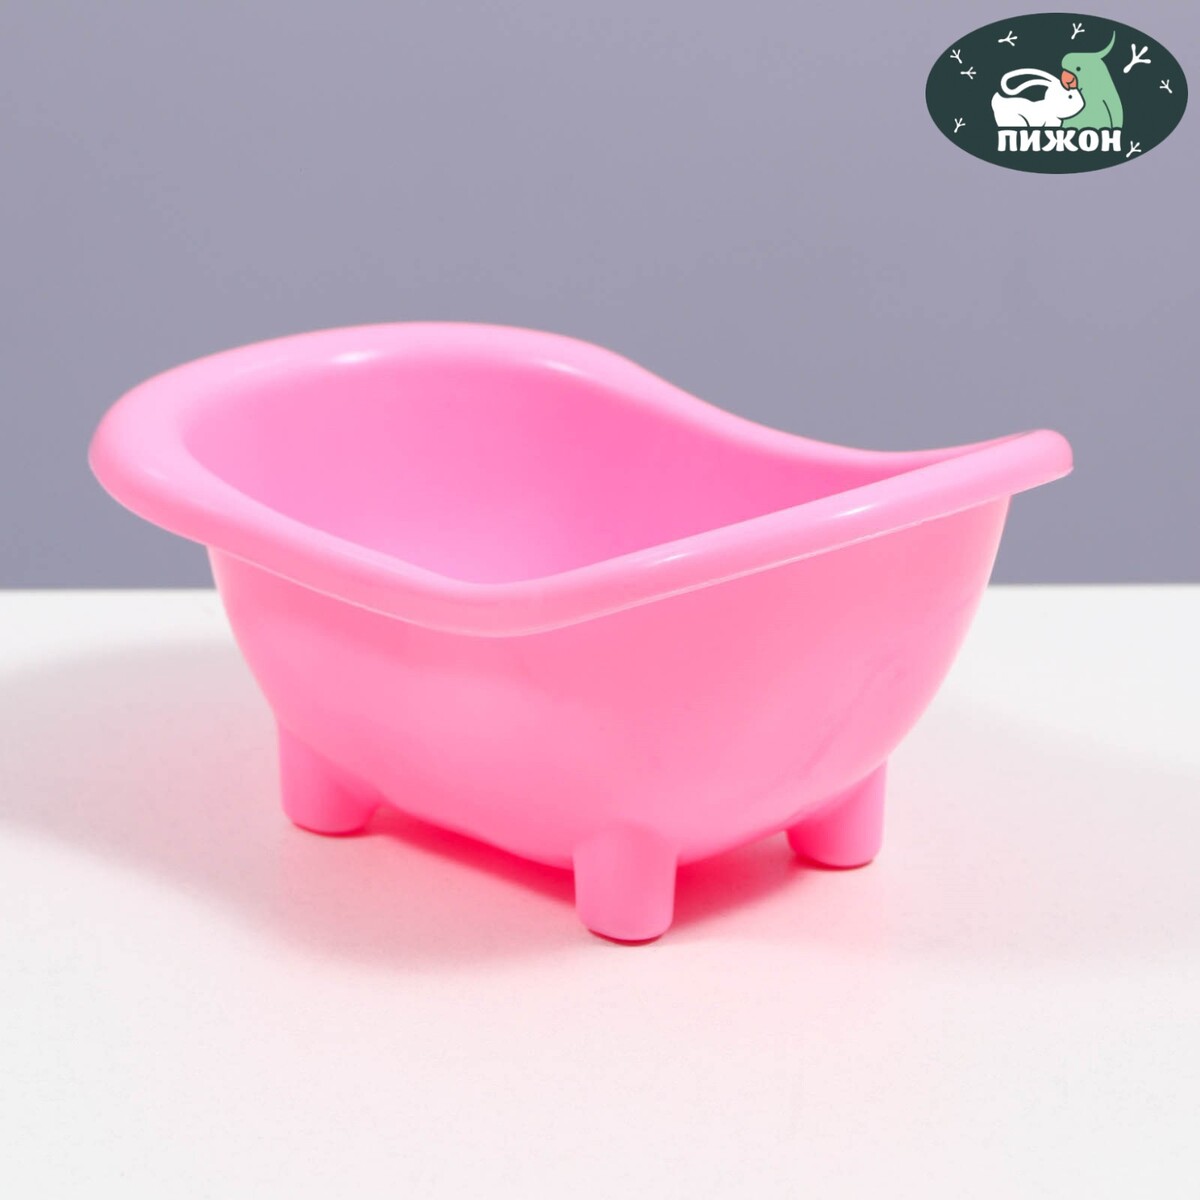 Ванночка для хомяков, 15,5 х 8,5 см, розовая ванночка для хомяков 15 5 х 8 5 см розовая